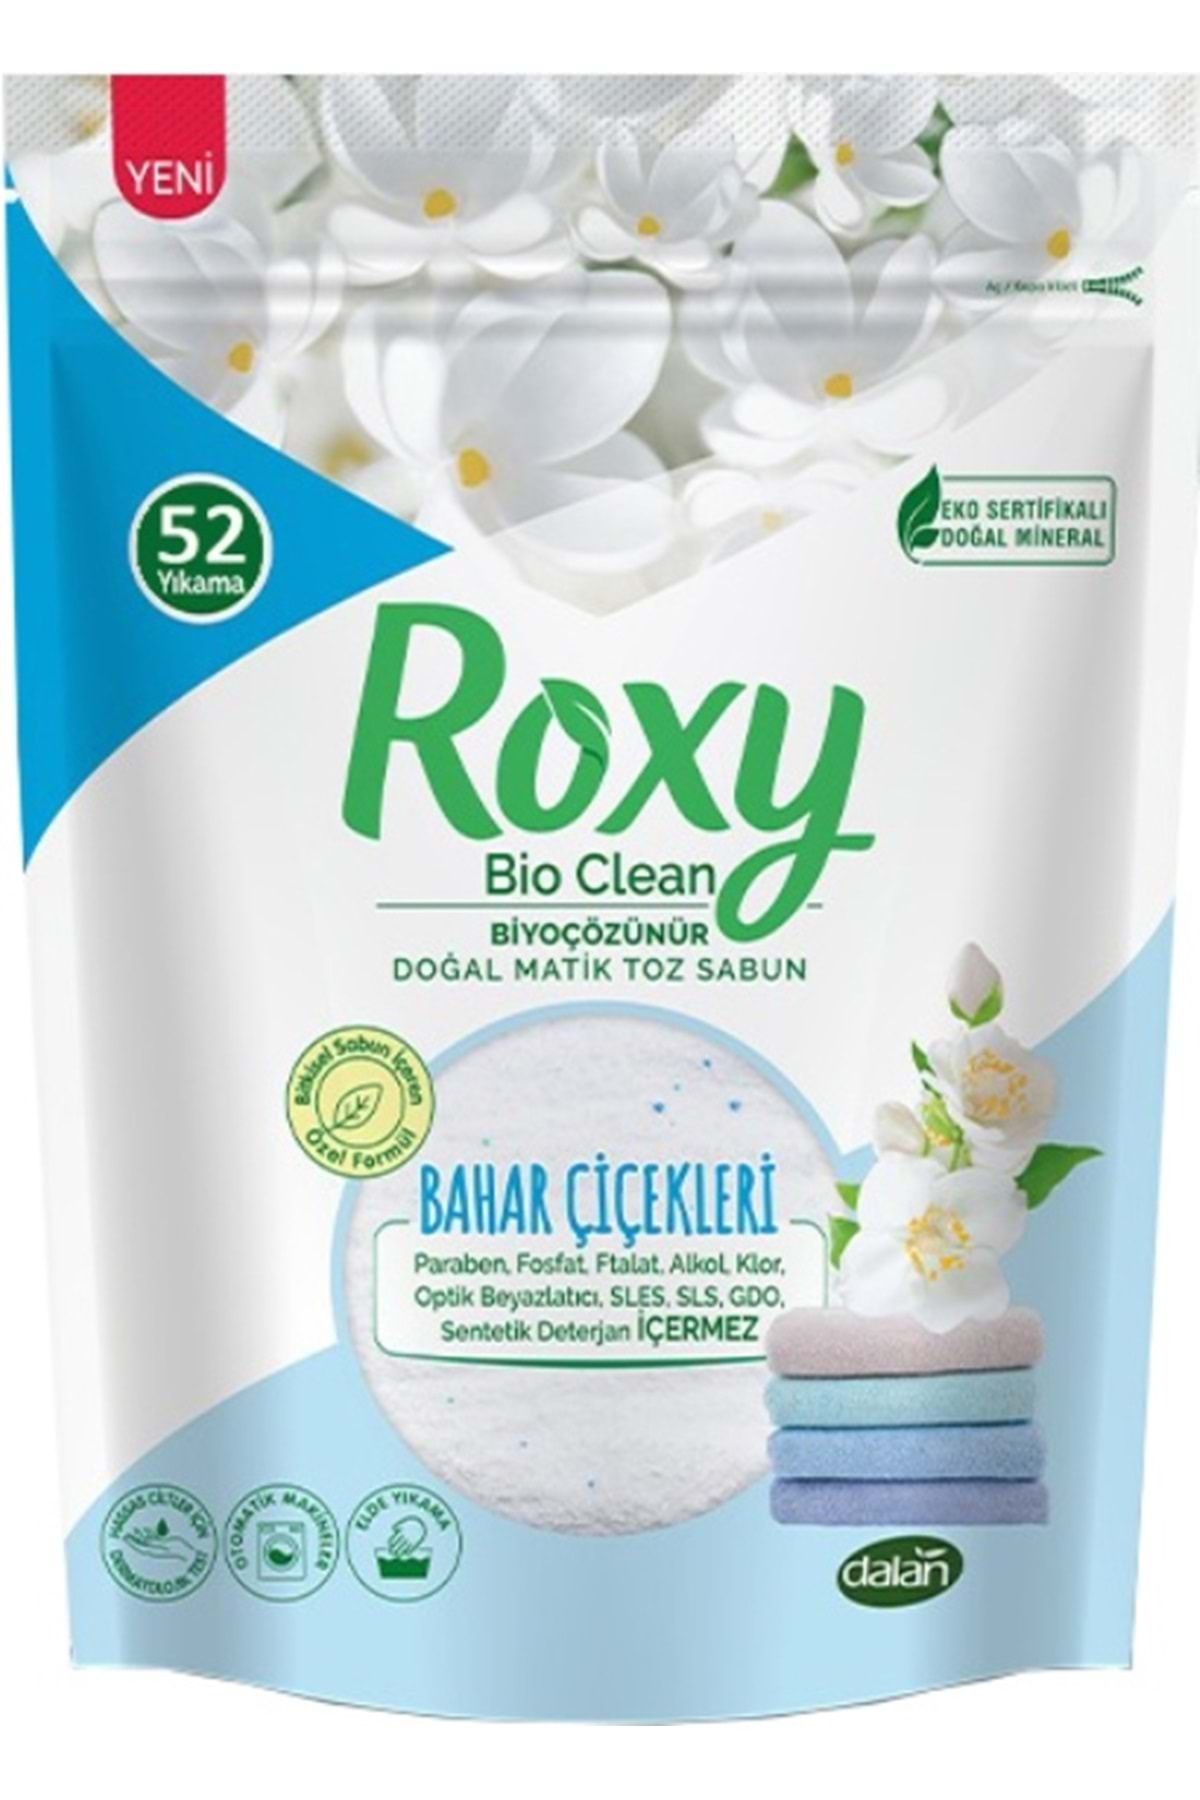 Dalan Roxy Bio Clean Matik Sabun Tozu 1.6kg Bahar Çiçekleri (52 Yıkama)